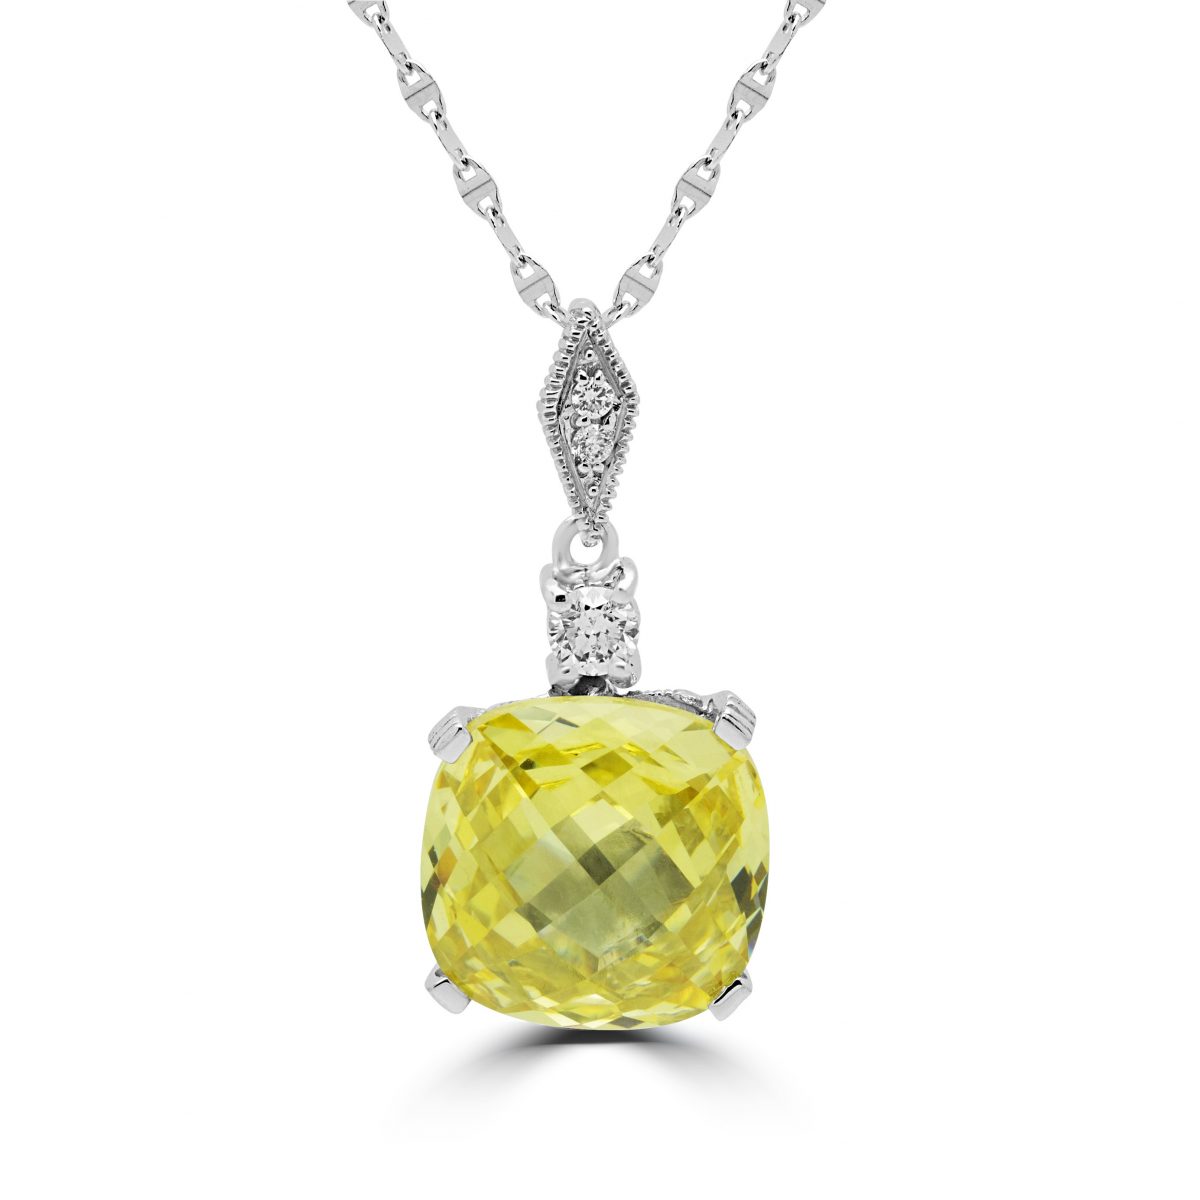 Diamants et pendentif fantaisie taille coussin CZ couleur canari en or blanc 14 carats